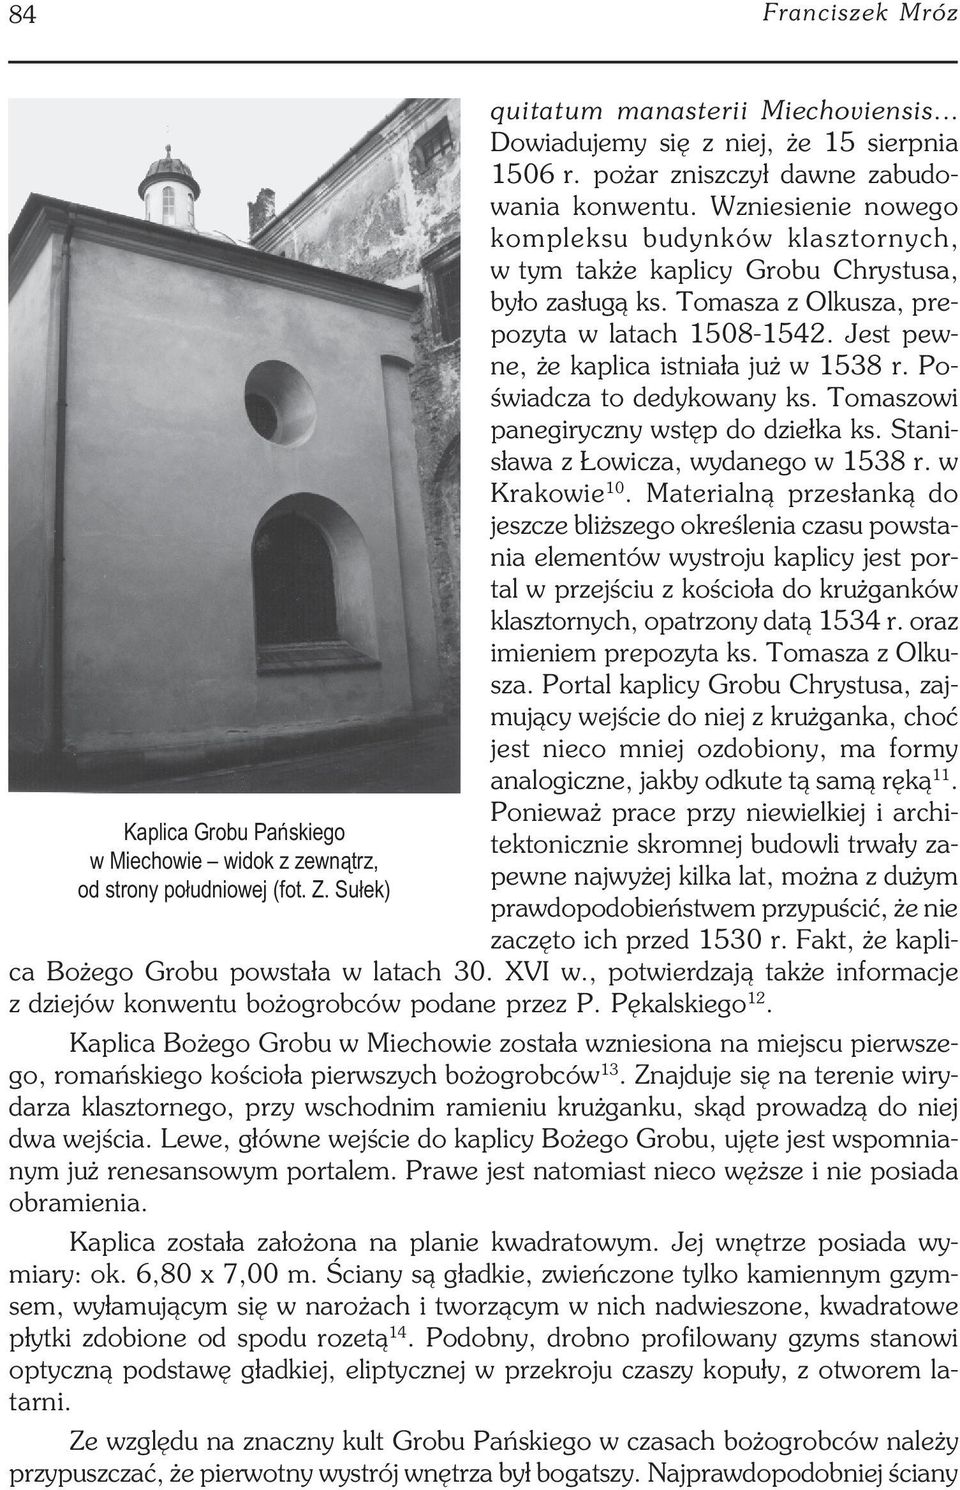 Jest pew ne, że kaplica istniała już w 1538 r. Po świadcza to dedykowany ks. Tomaszowi panegiryczny wstęp do dziełka ks. Stani sława z Łowicza, wydanego w 1538 r. w Krakowie 10.